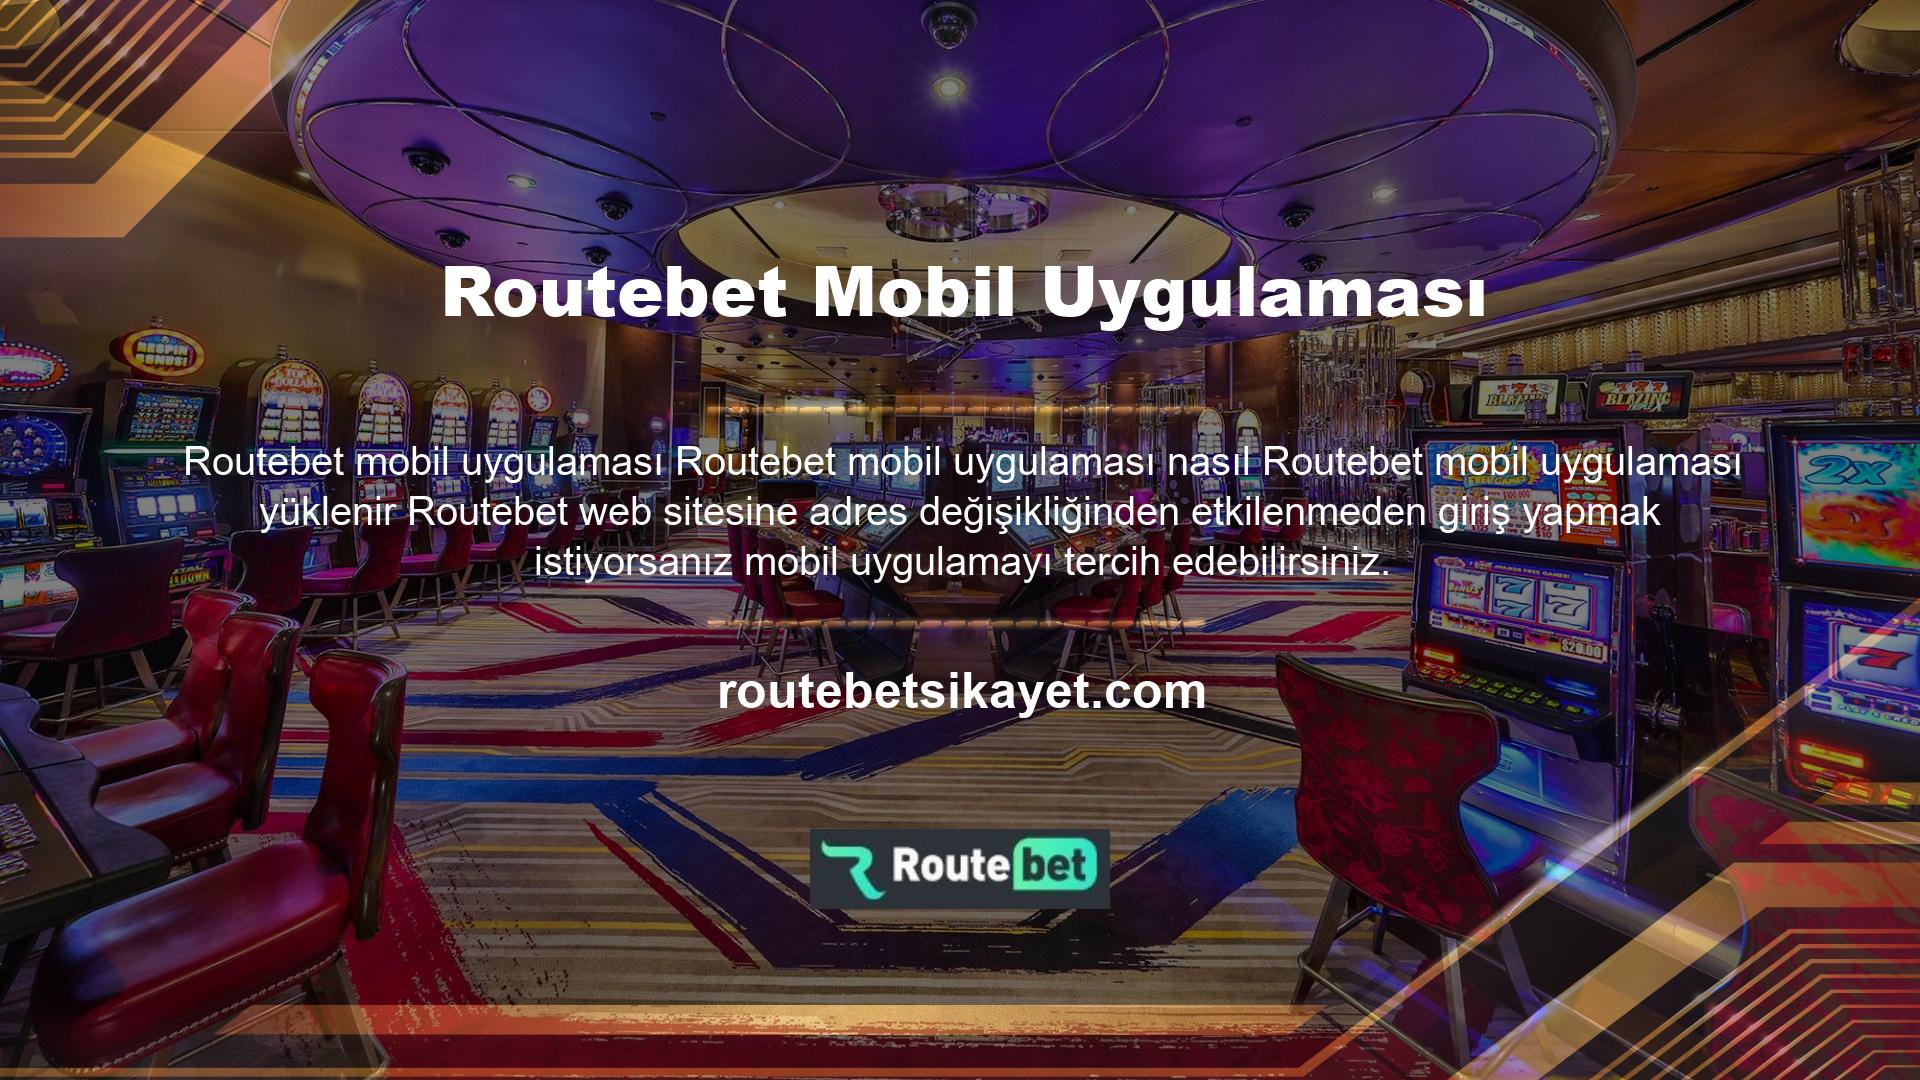 Routebet mobil uygulamasını indirmeden önce mobil cihazınızın ayarlar kısmından “Yabancı kaynaklara izin ver” sekmesini aktif etmeyi unutmayınız